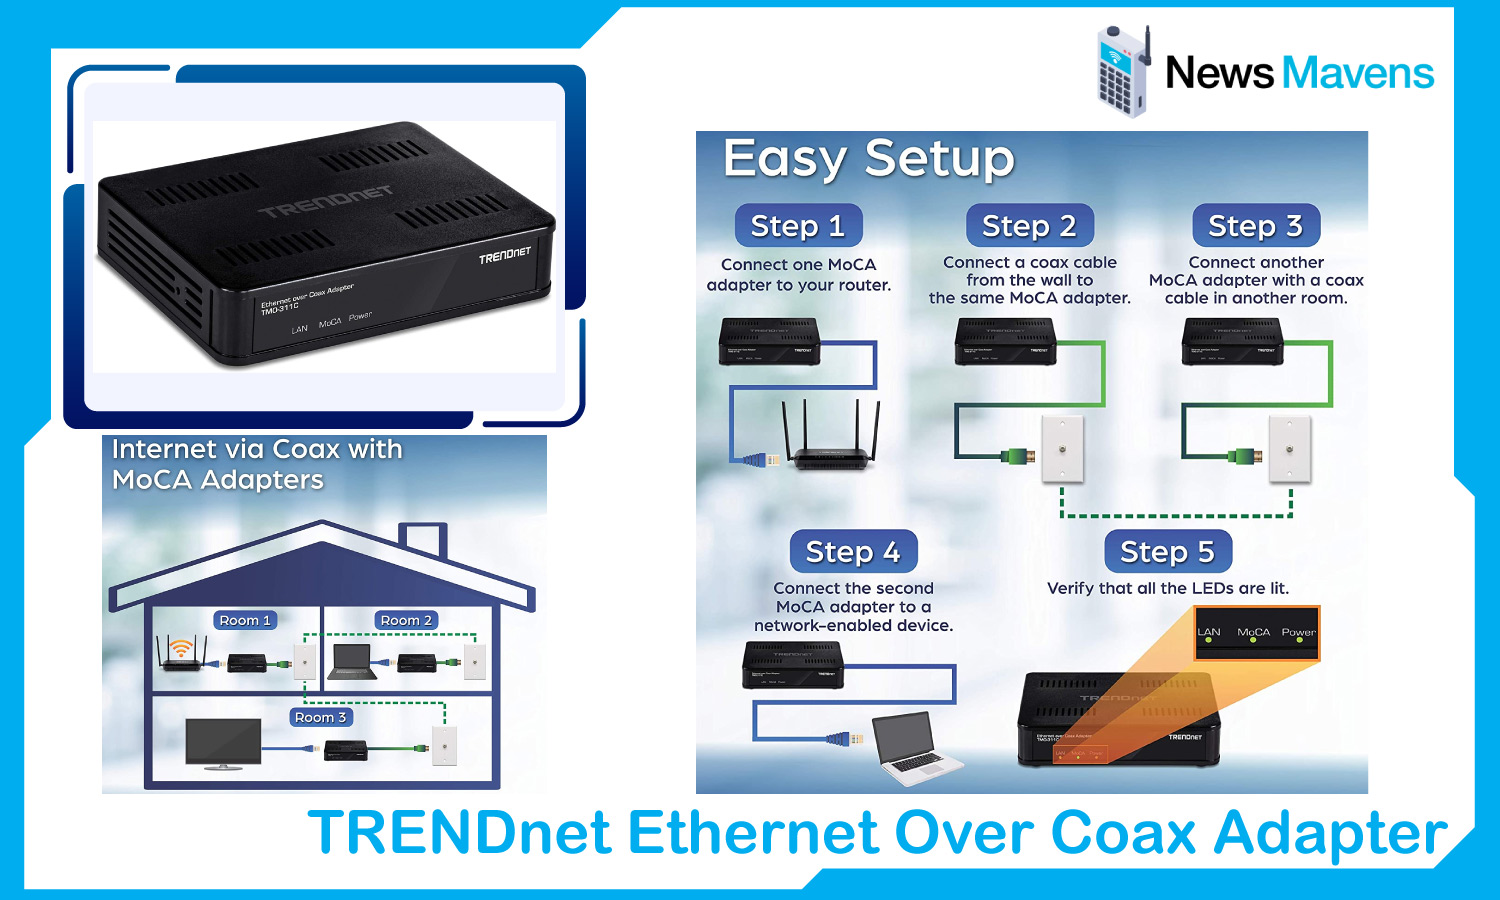 TRENDnet Ethernet Over Coax Adapter